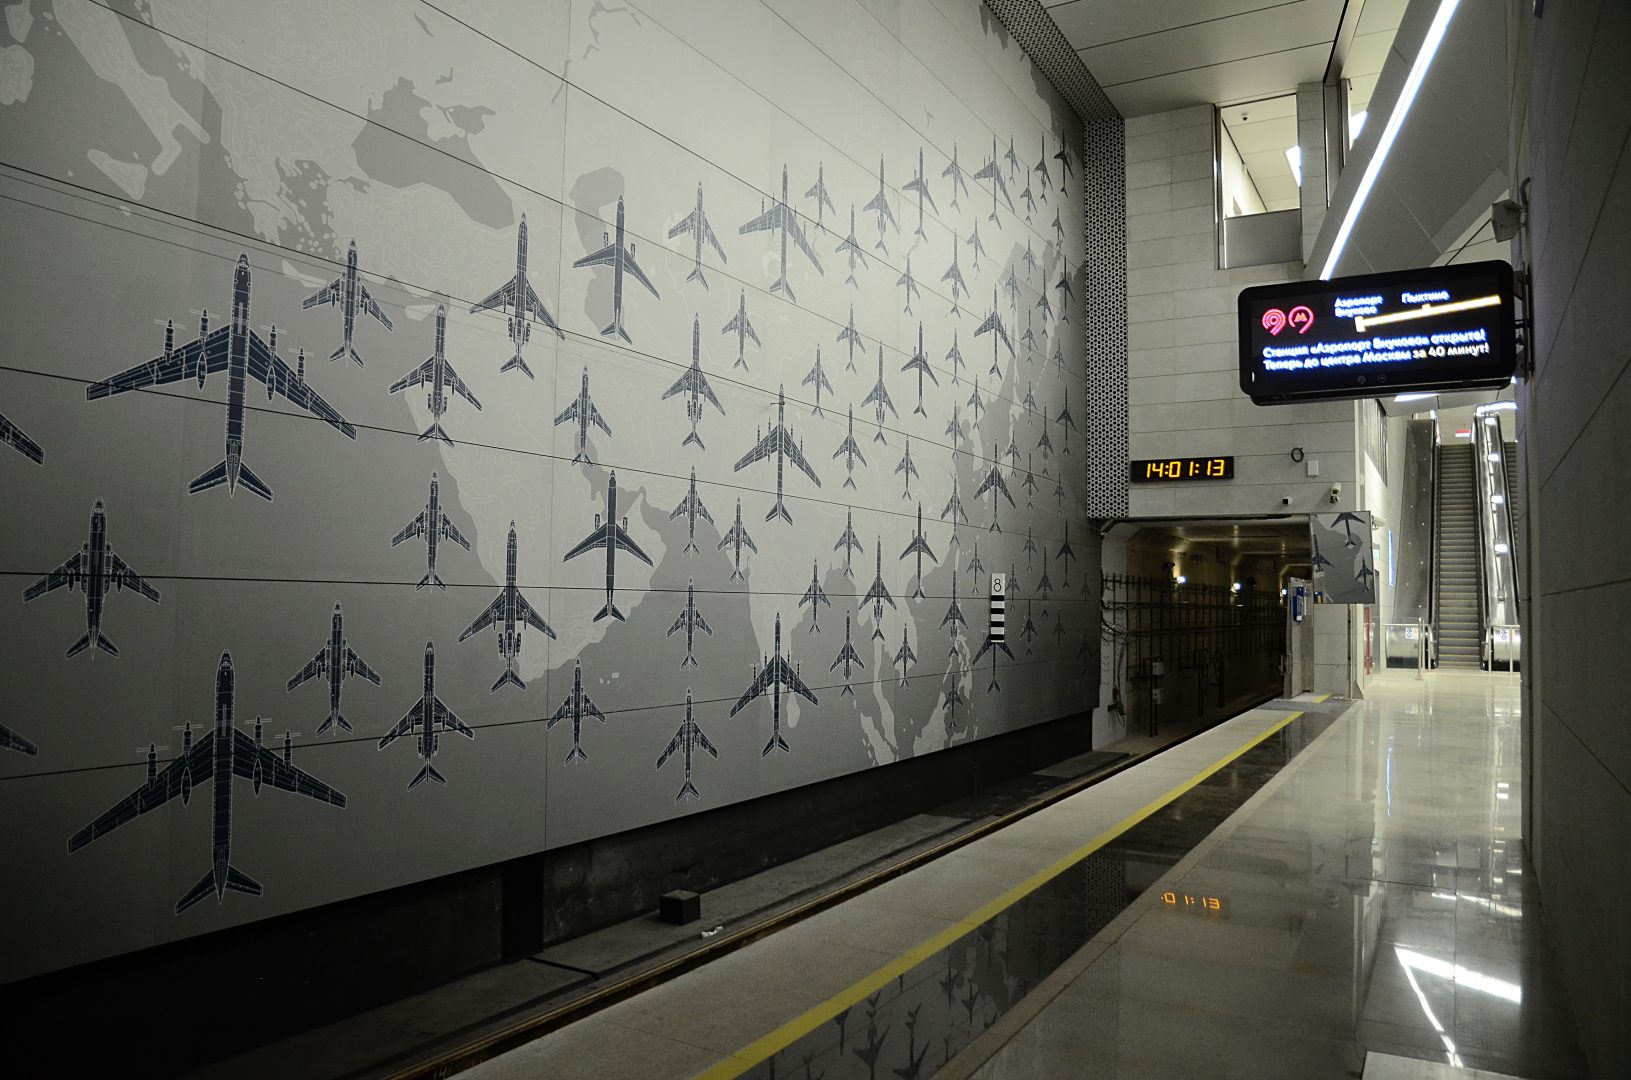 В рамках конкурса члены жюри выделили дизайн станции, который отсылает к авиации. Фото: Анна Быкова, «Вечерняя Москва»